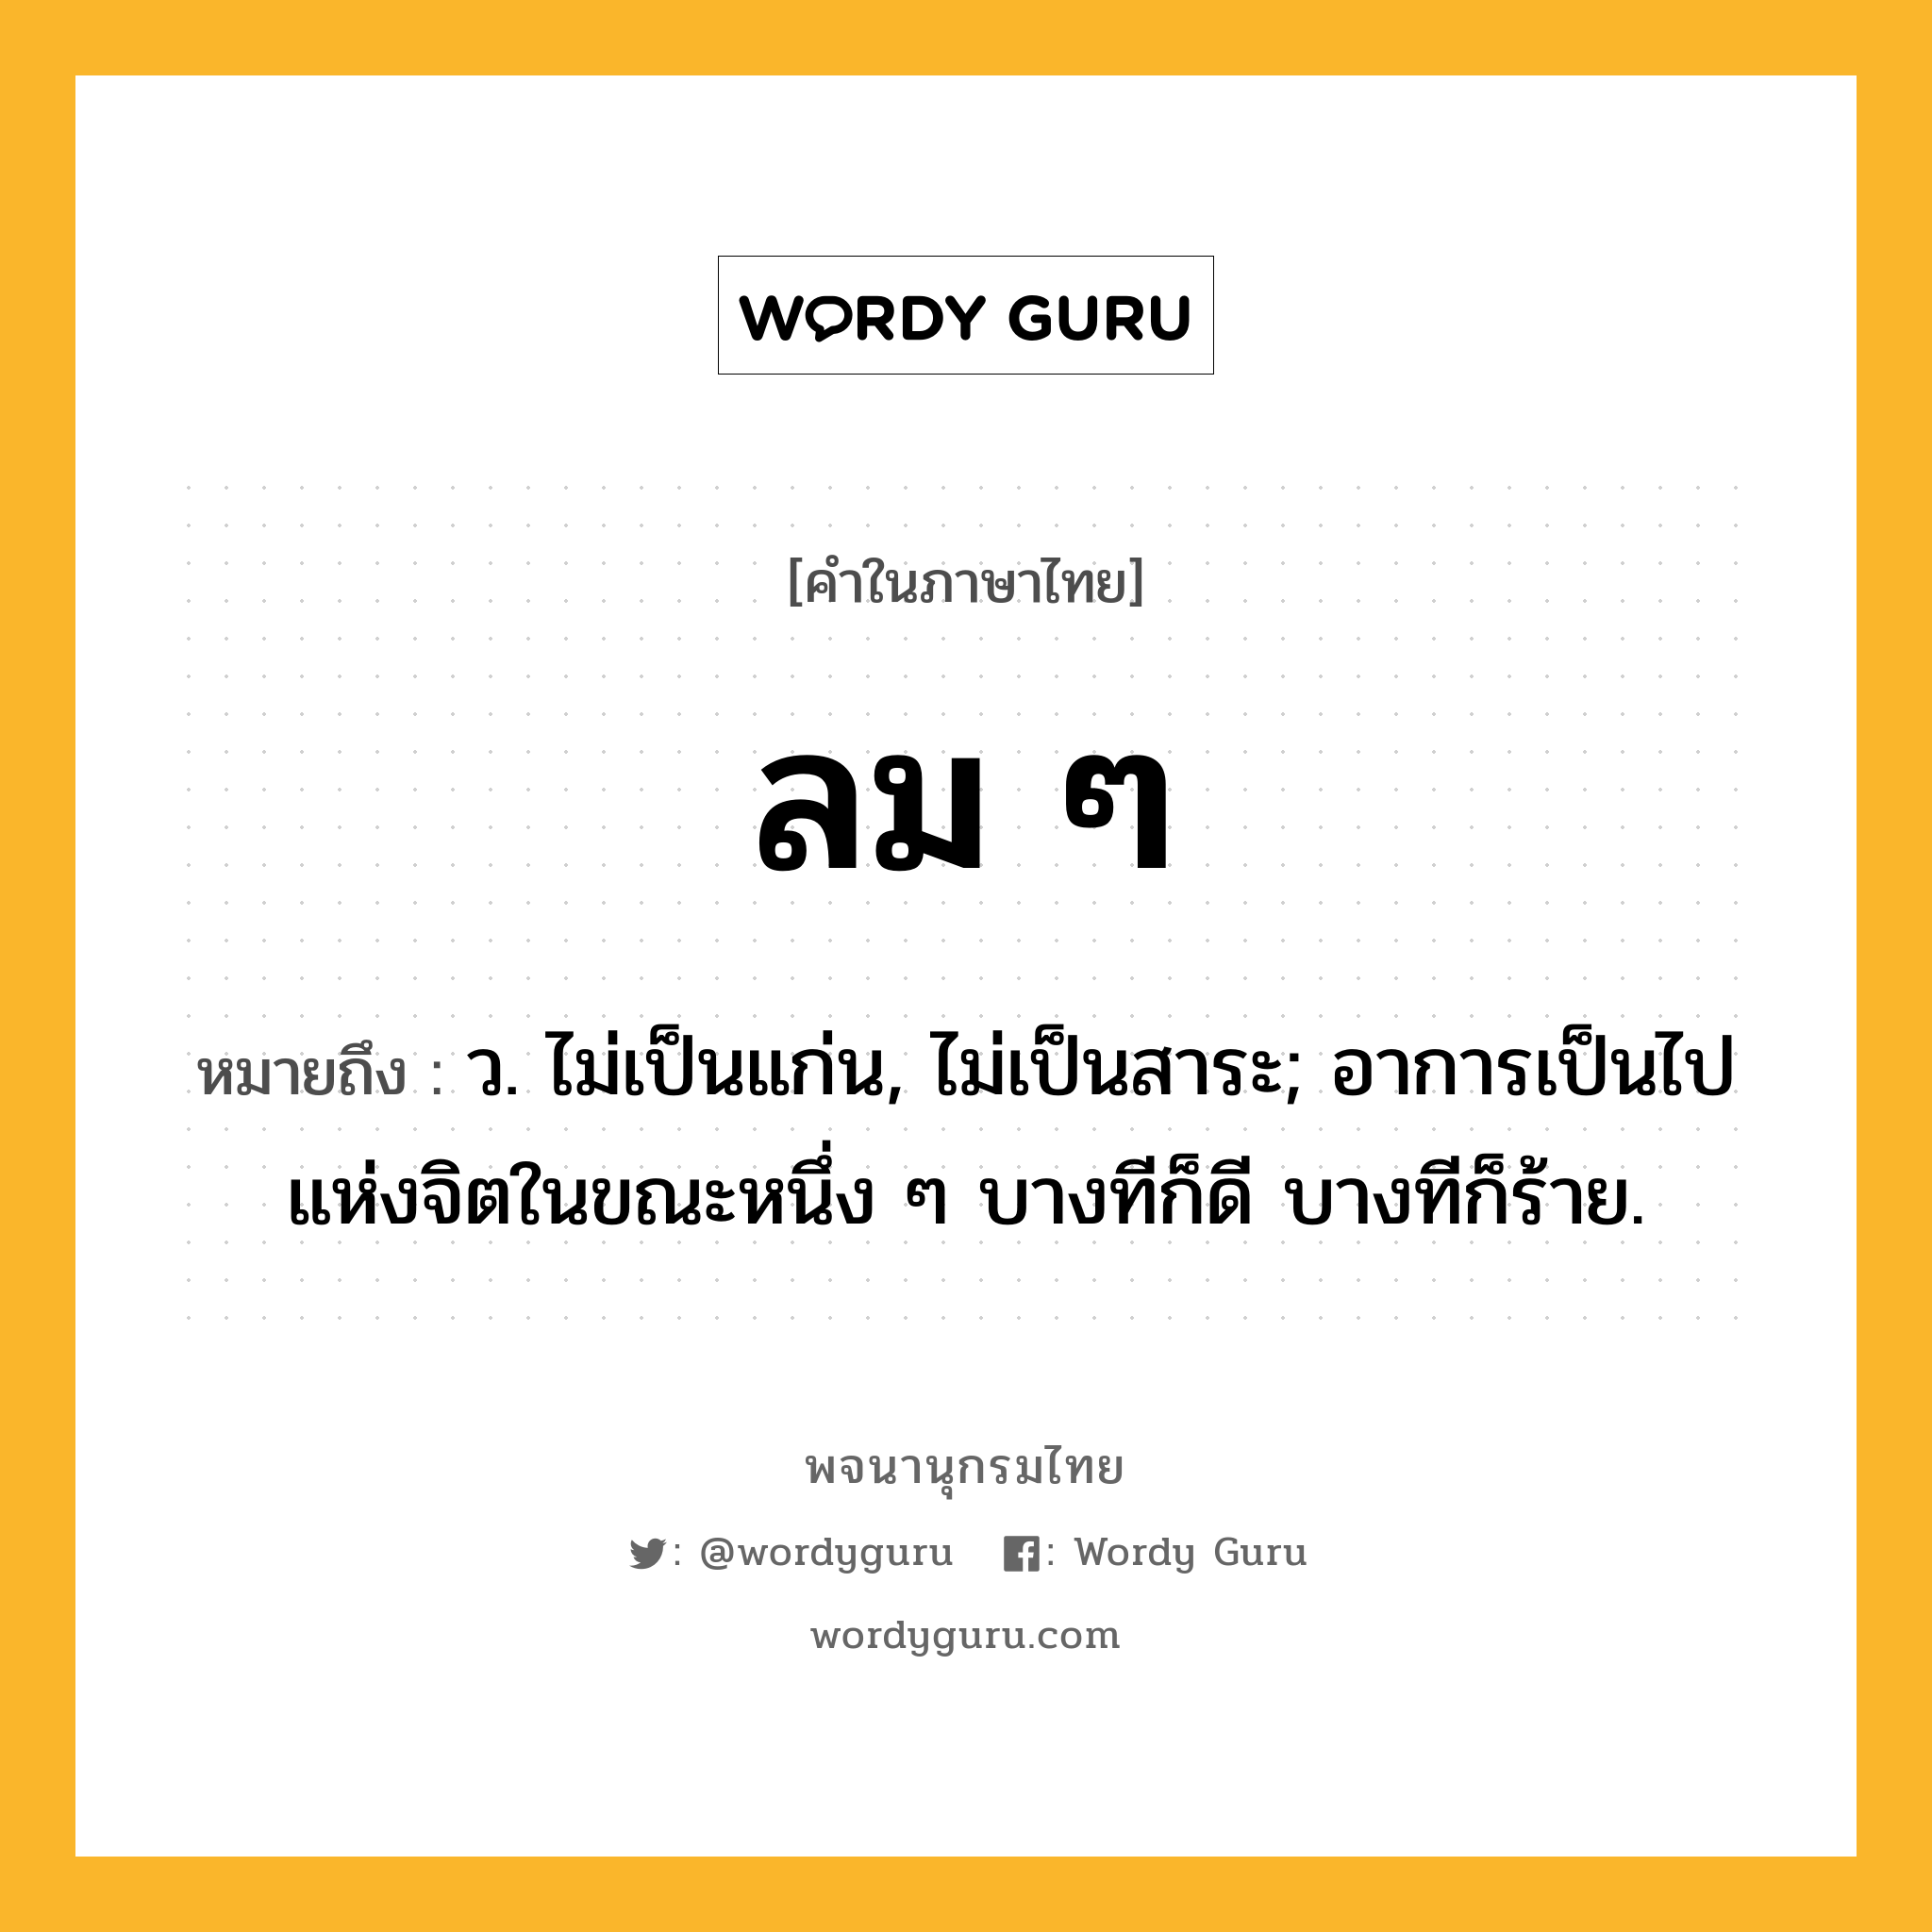 ลม ๆ ความหมาย หมายถึงอะไร?, คำในภาษาไทย ลม ๆ หมายถึง ว. ไม่เป็นแก่น, ไม่เป็นสาระ; อาการเป็นไปแห่งจิตในขณะหนึ่ง ๆ บางทีก็ดี บางทีก็ร้าย.